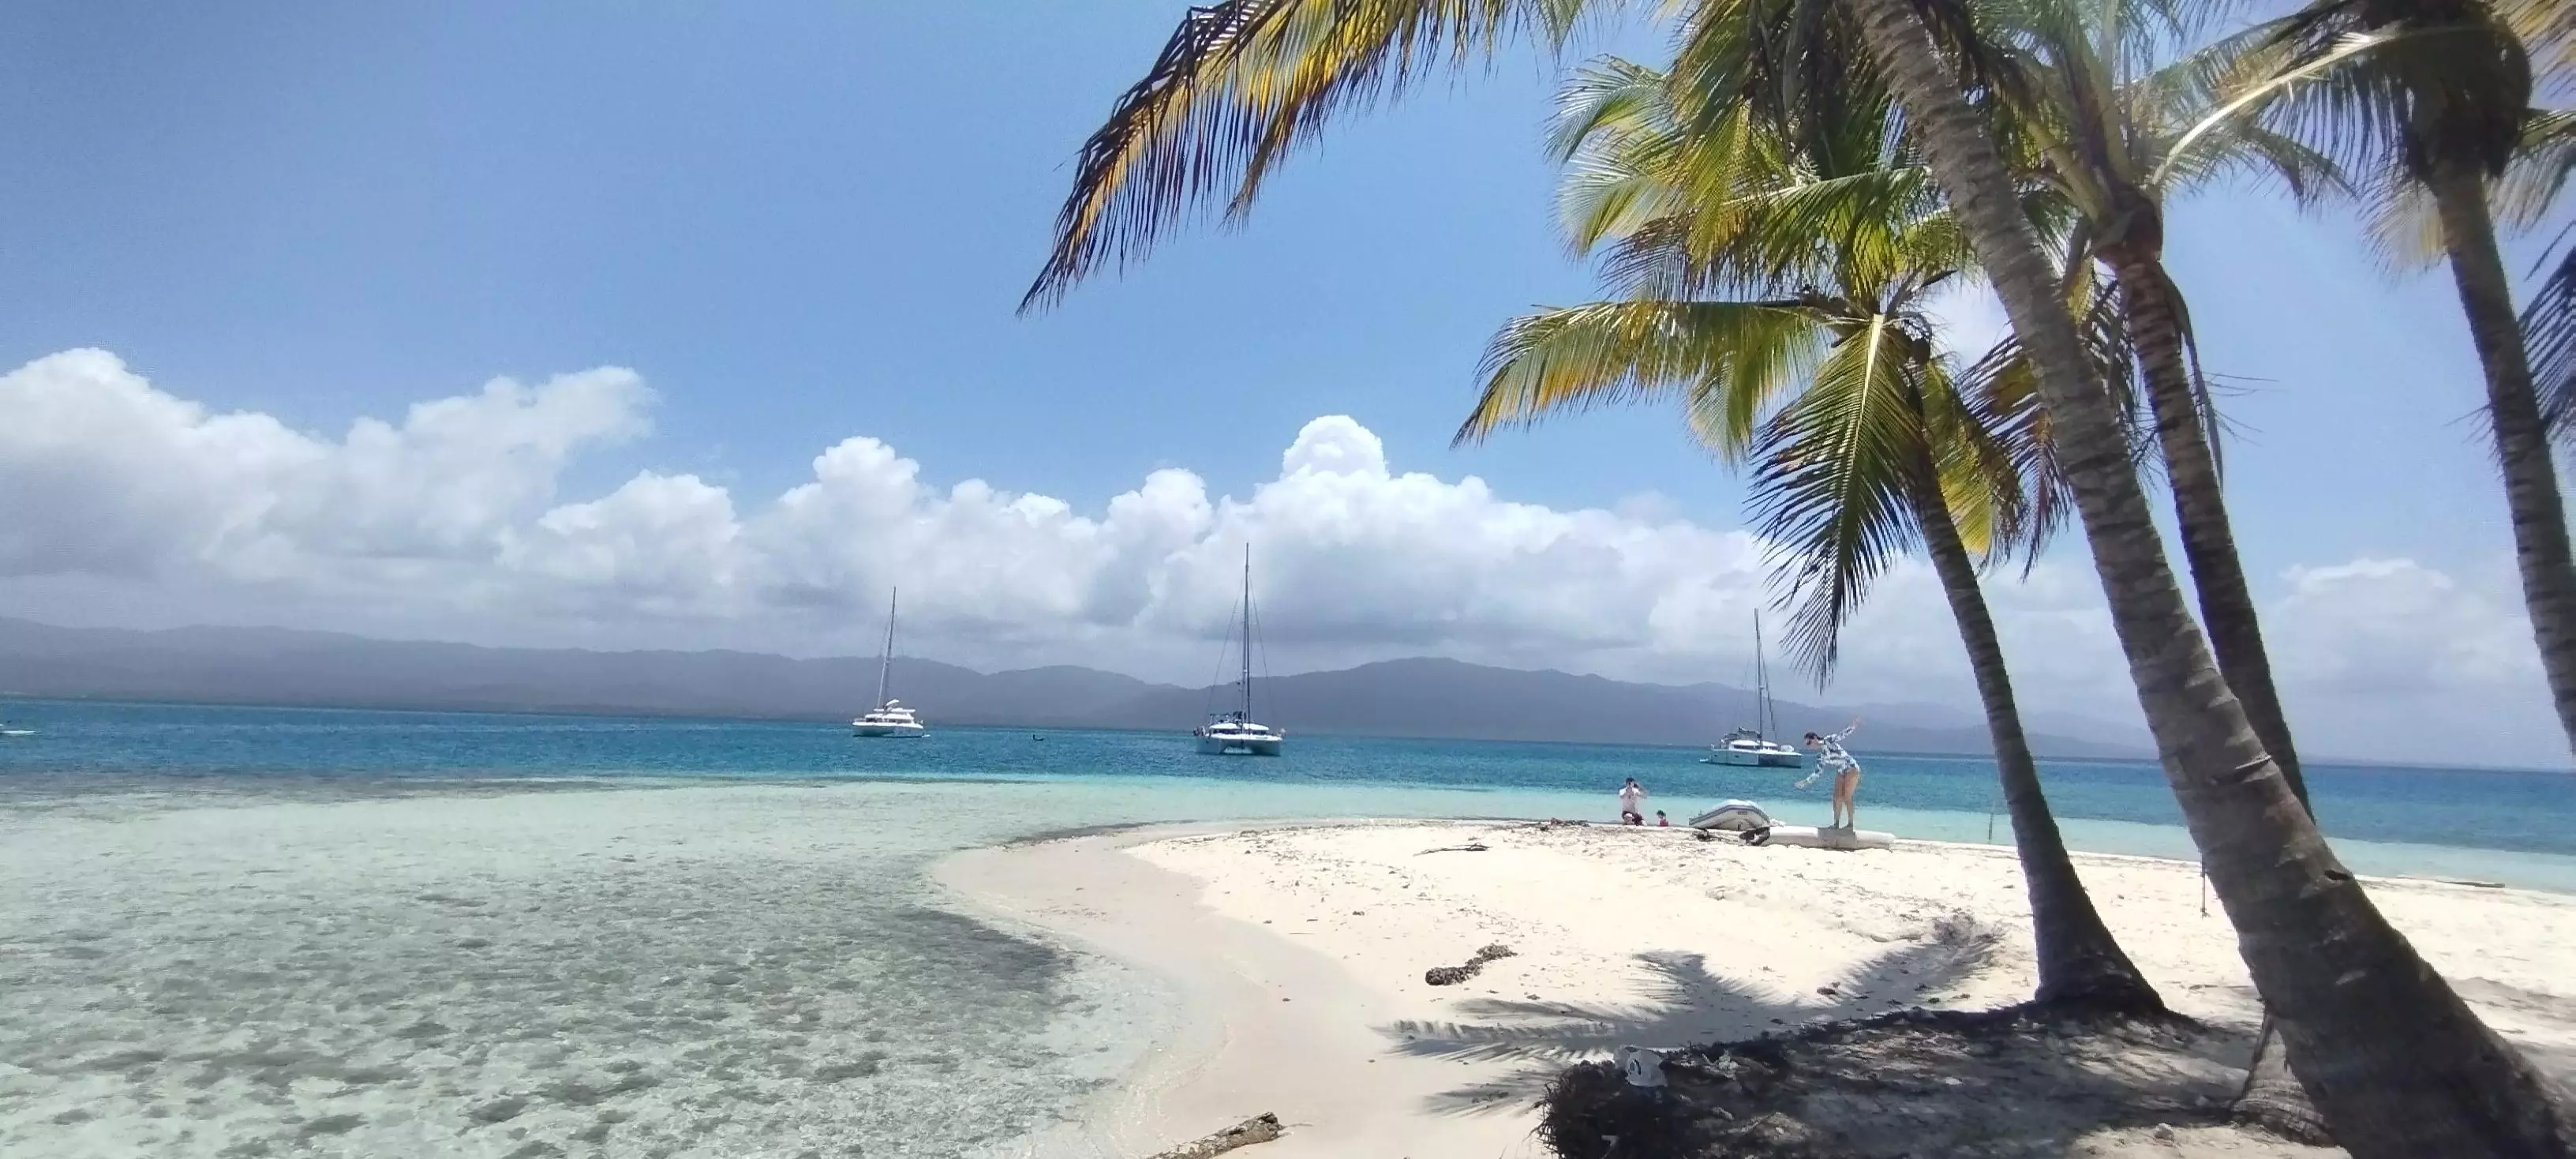 圣布拉斯群岛巴拿马加勒比海, 巴拿马旅游目的地, 巴拿马旅游, 巴拿马度假